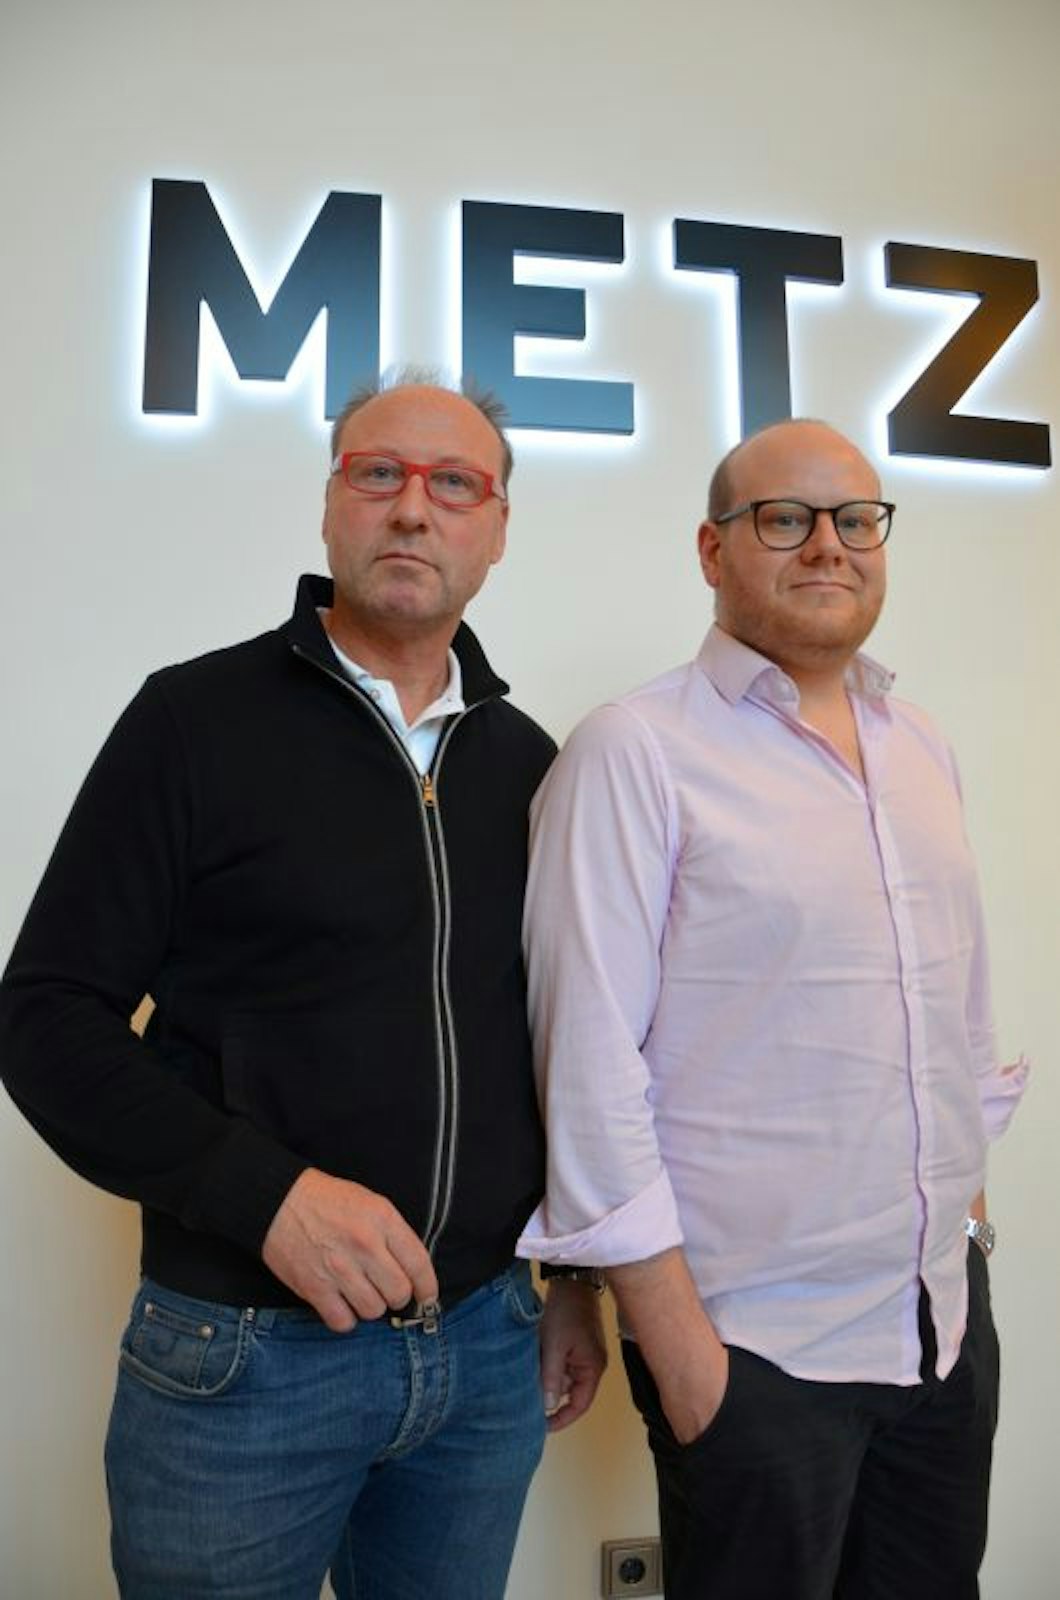 Inhaber Paul Metz (l.) und Geschäftsführer Felix Bartsch sorgen sich um ihren Betrieb, der gewöhnlich im großen Stile Gäste von Veranstaltungen und privaten Feiern verköstigt.